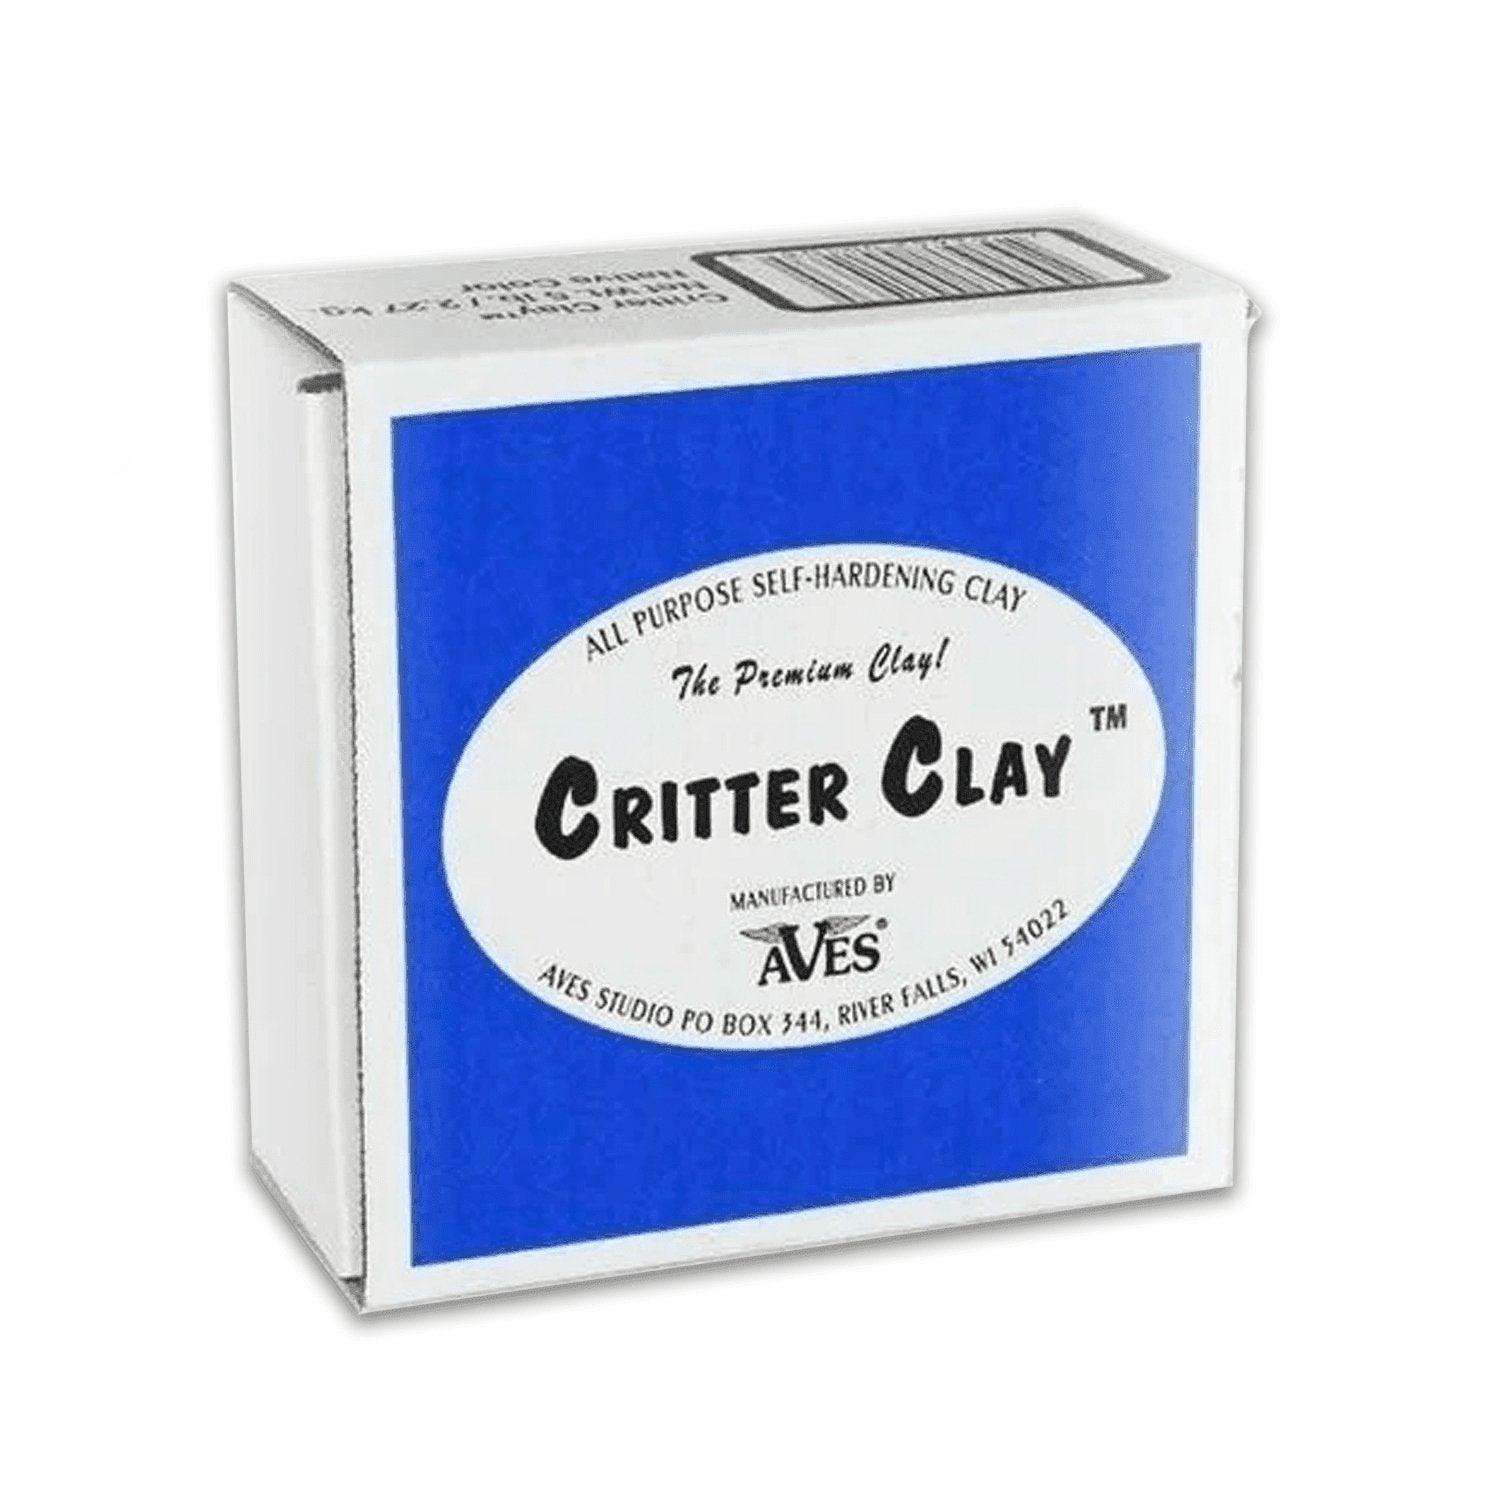 Critter Clay - Matuska Taxidermy Supply Company